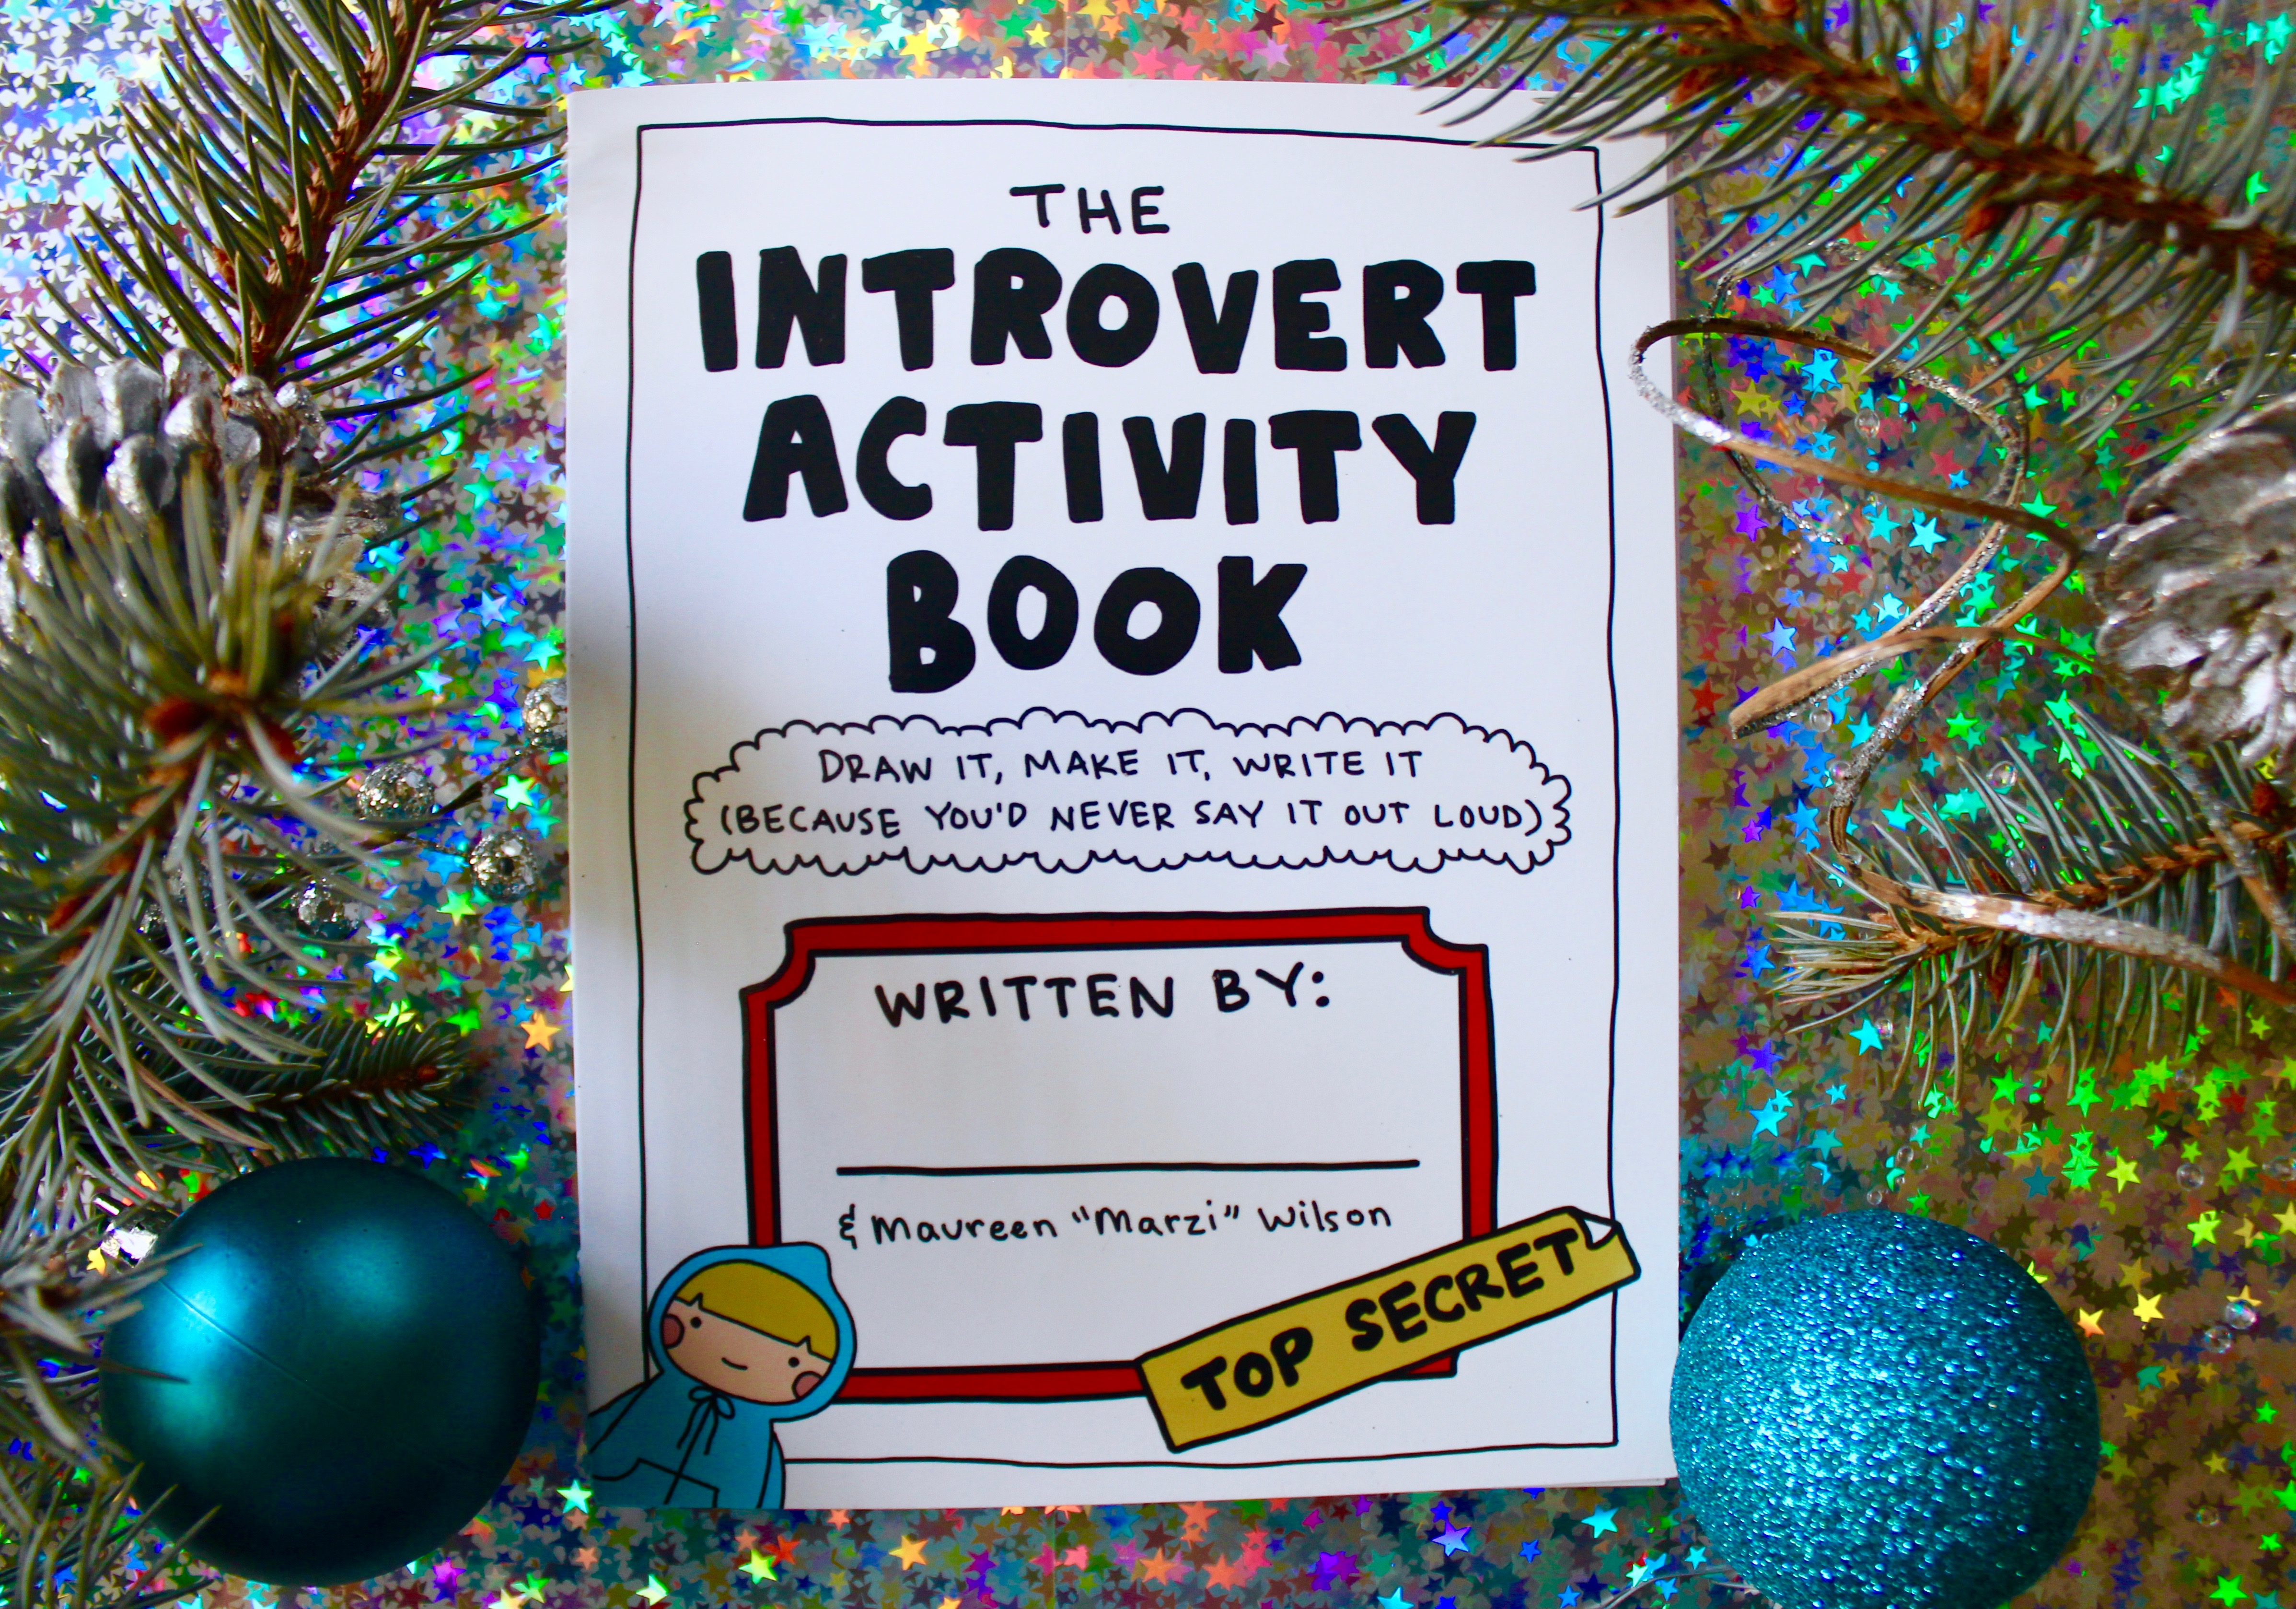 https://introvertdear.com/wp-content/uploads/2017/11/Introvert-Activity-Book.jpg